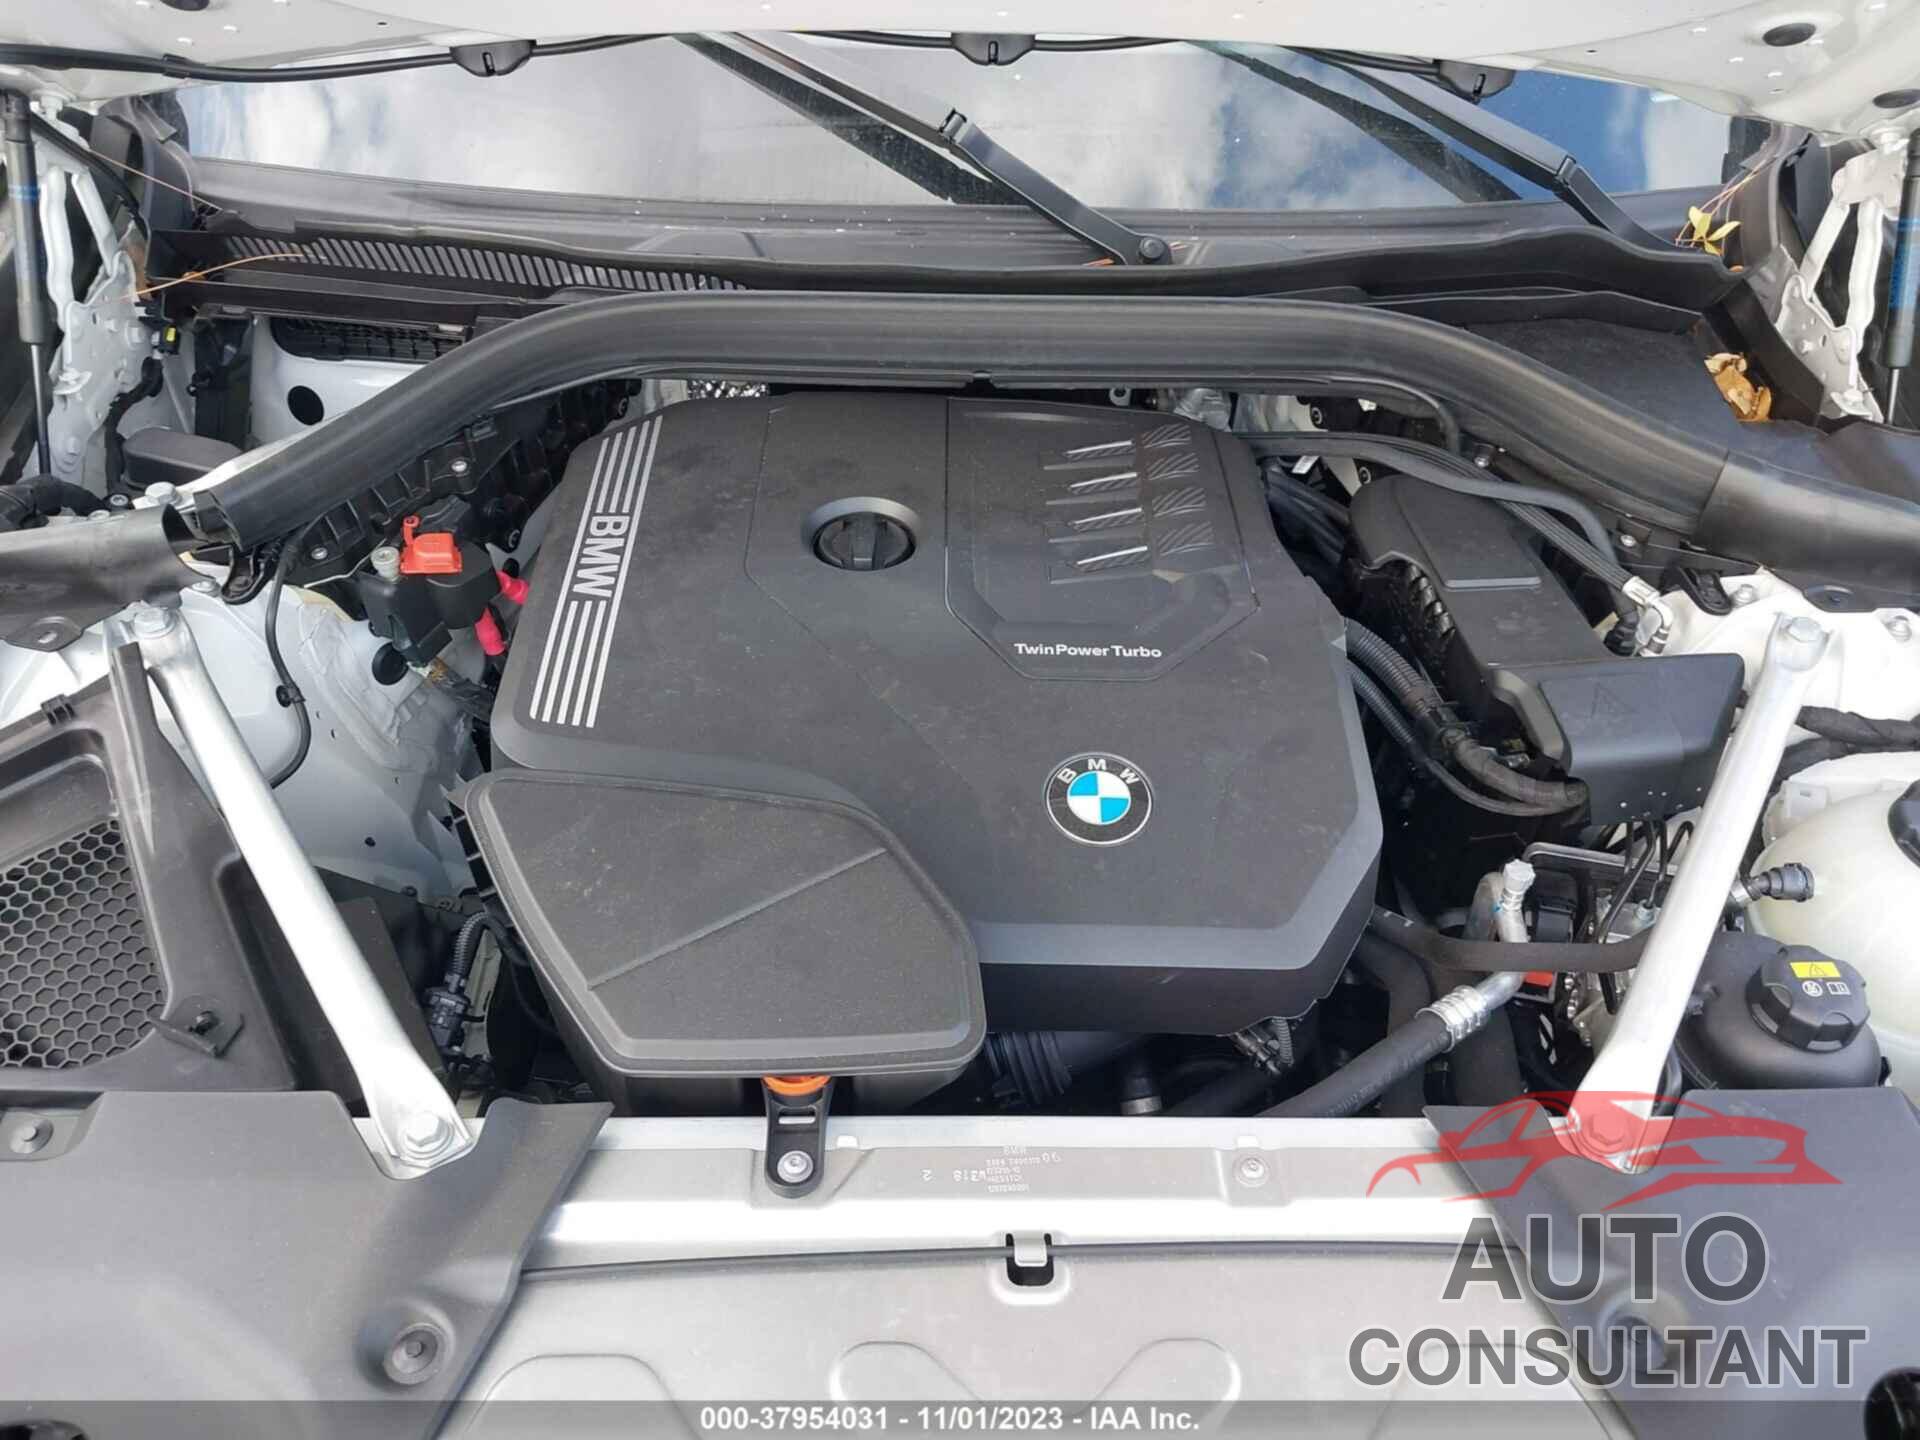 BMW X4 2023 - 5UX33DT00P9P82246